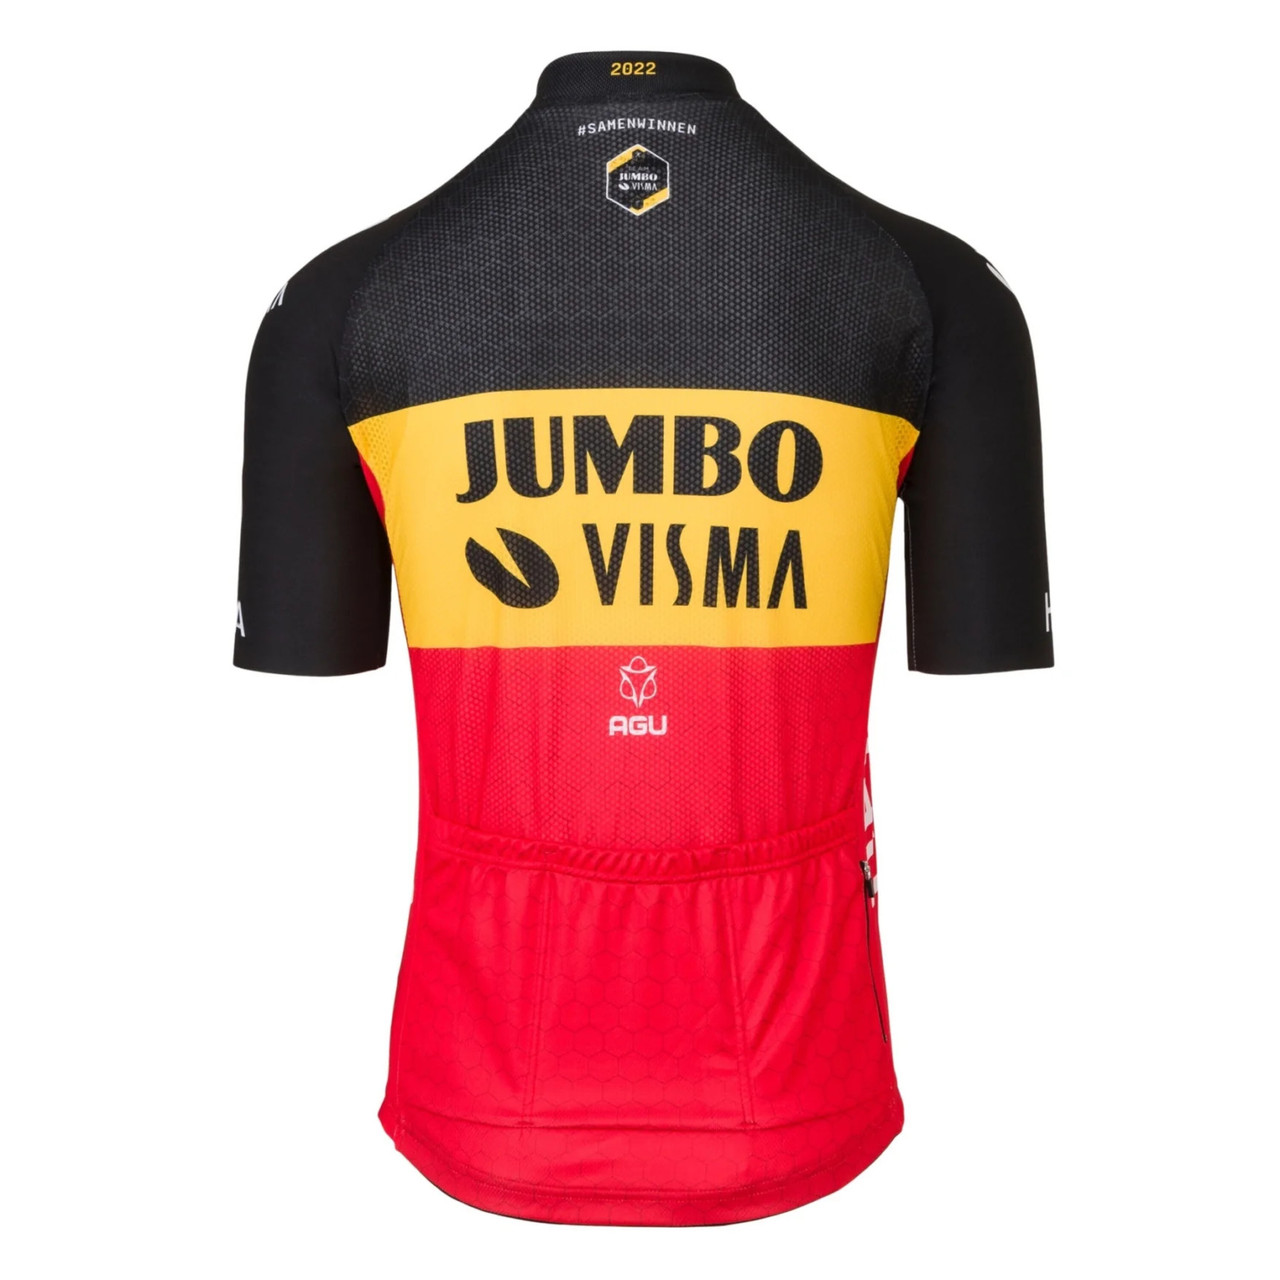 2022 Jumbo Visma Belgian Champion Jersey Rear